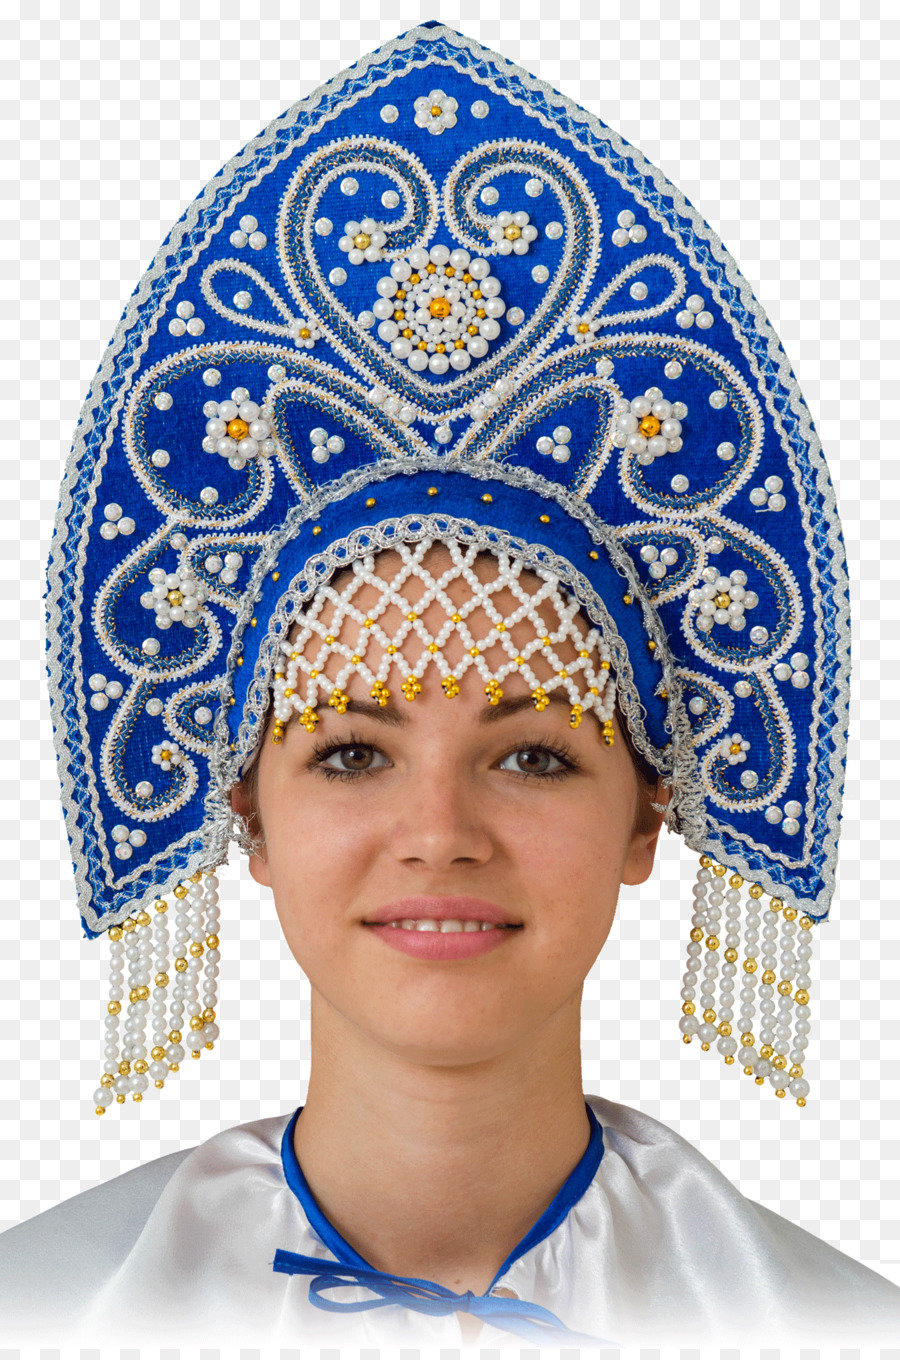 Kokoshnik Headpiece Russischen Volks Kopfbedeckung Kopfbedeckung Cap - Gap